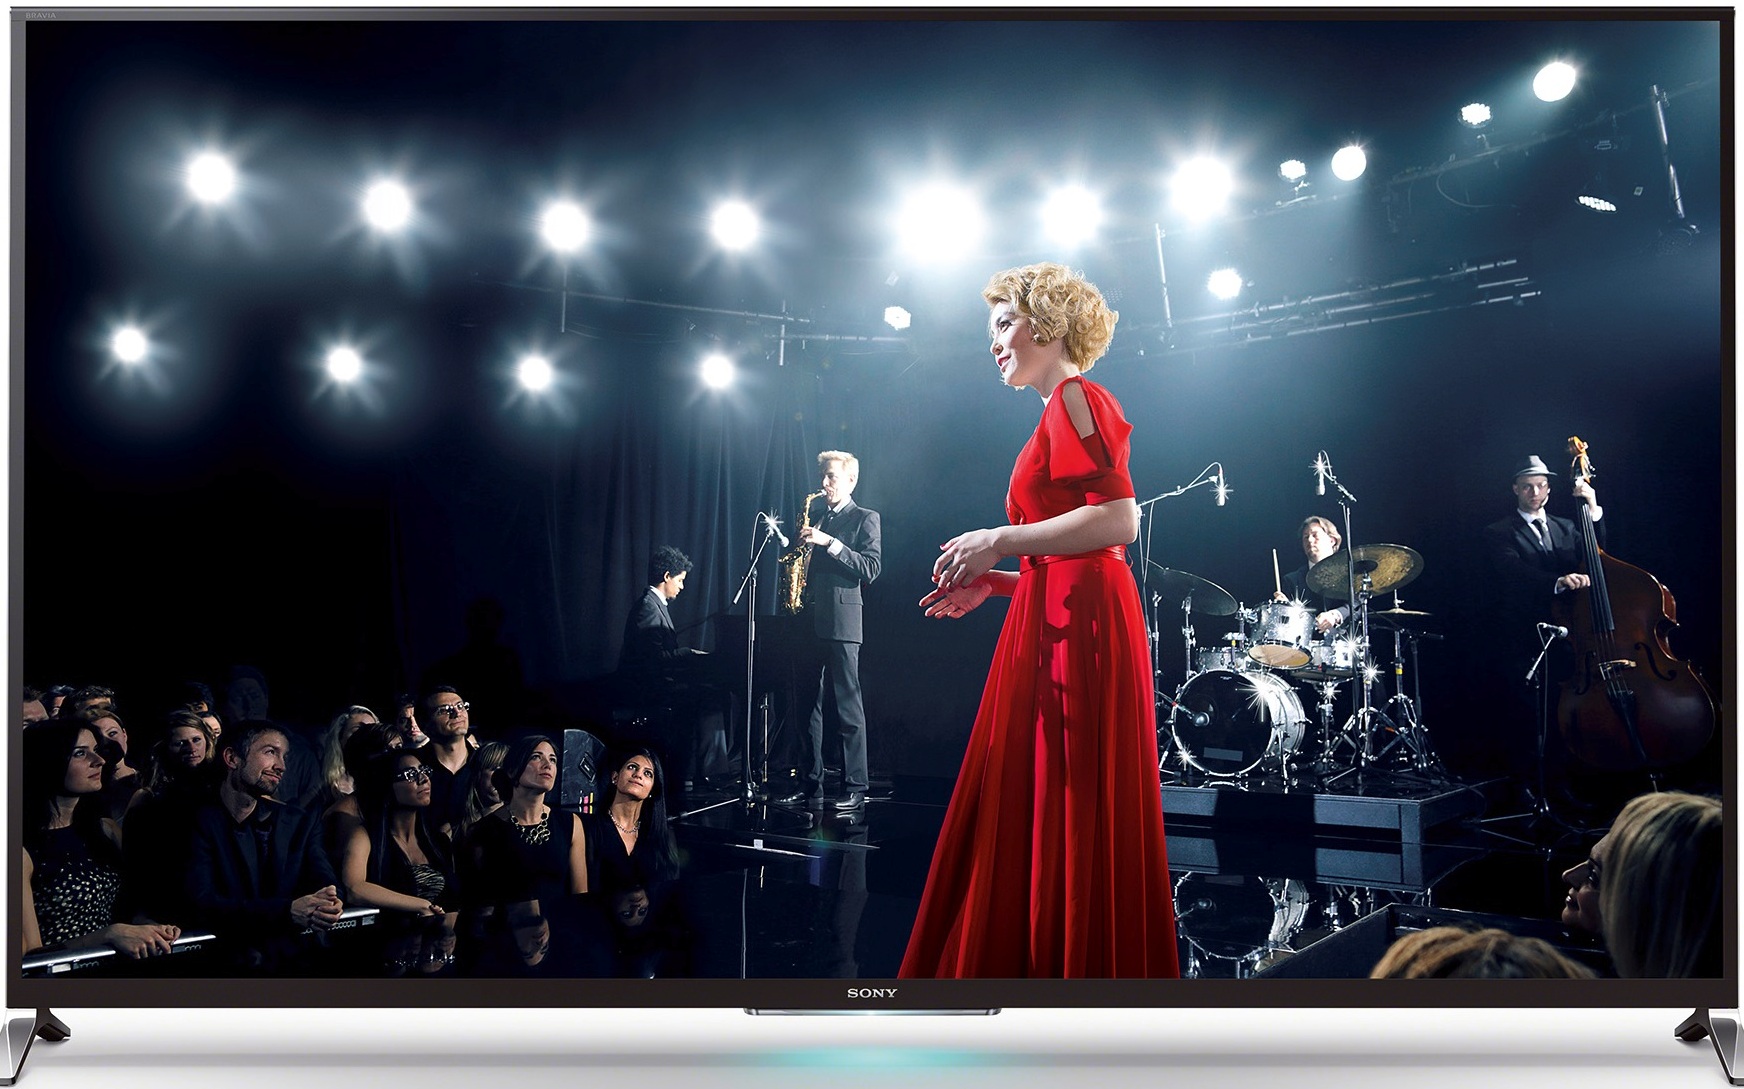  Televizor Smart LED 3D, Sony 65W955B, 165 cm, Full HD 